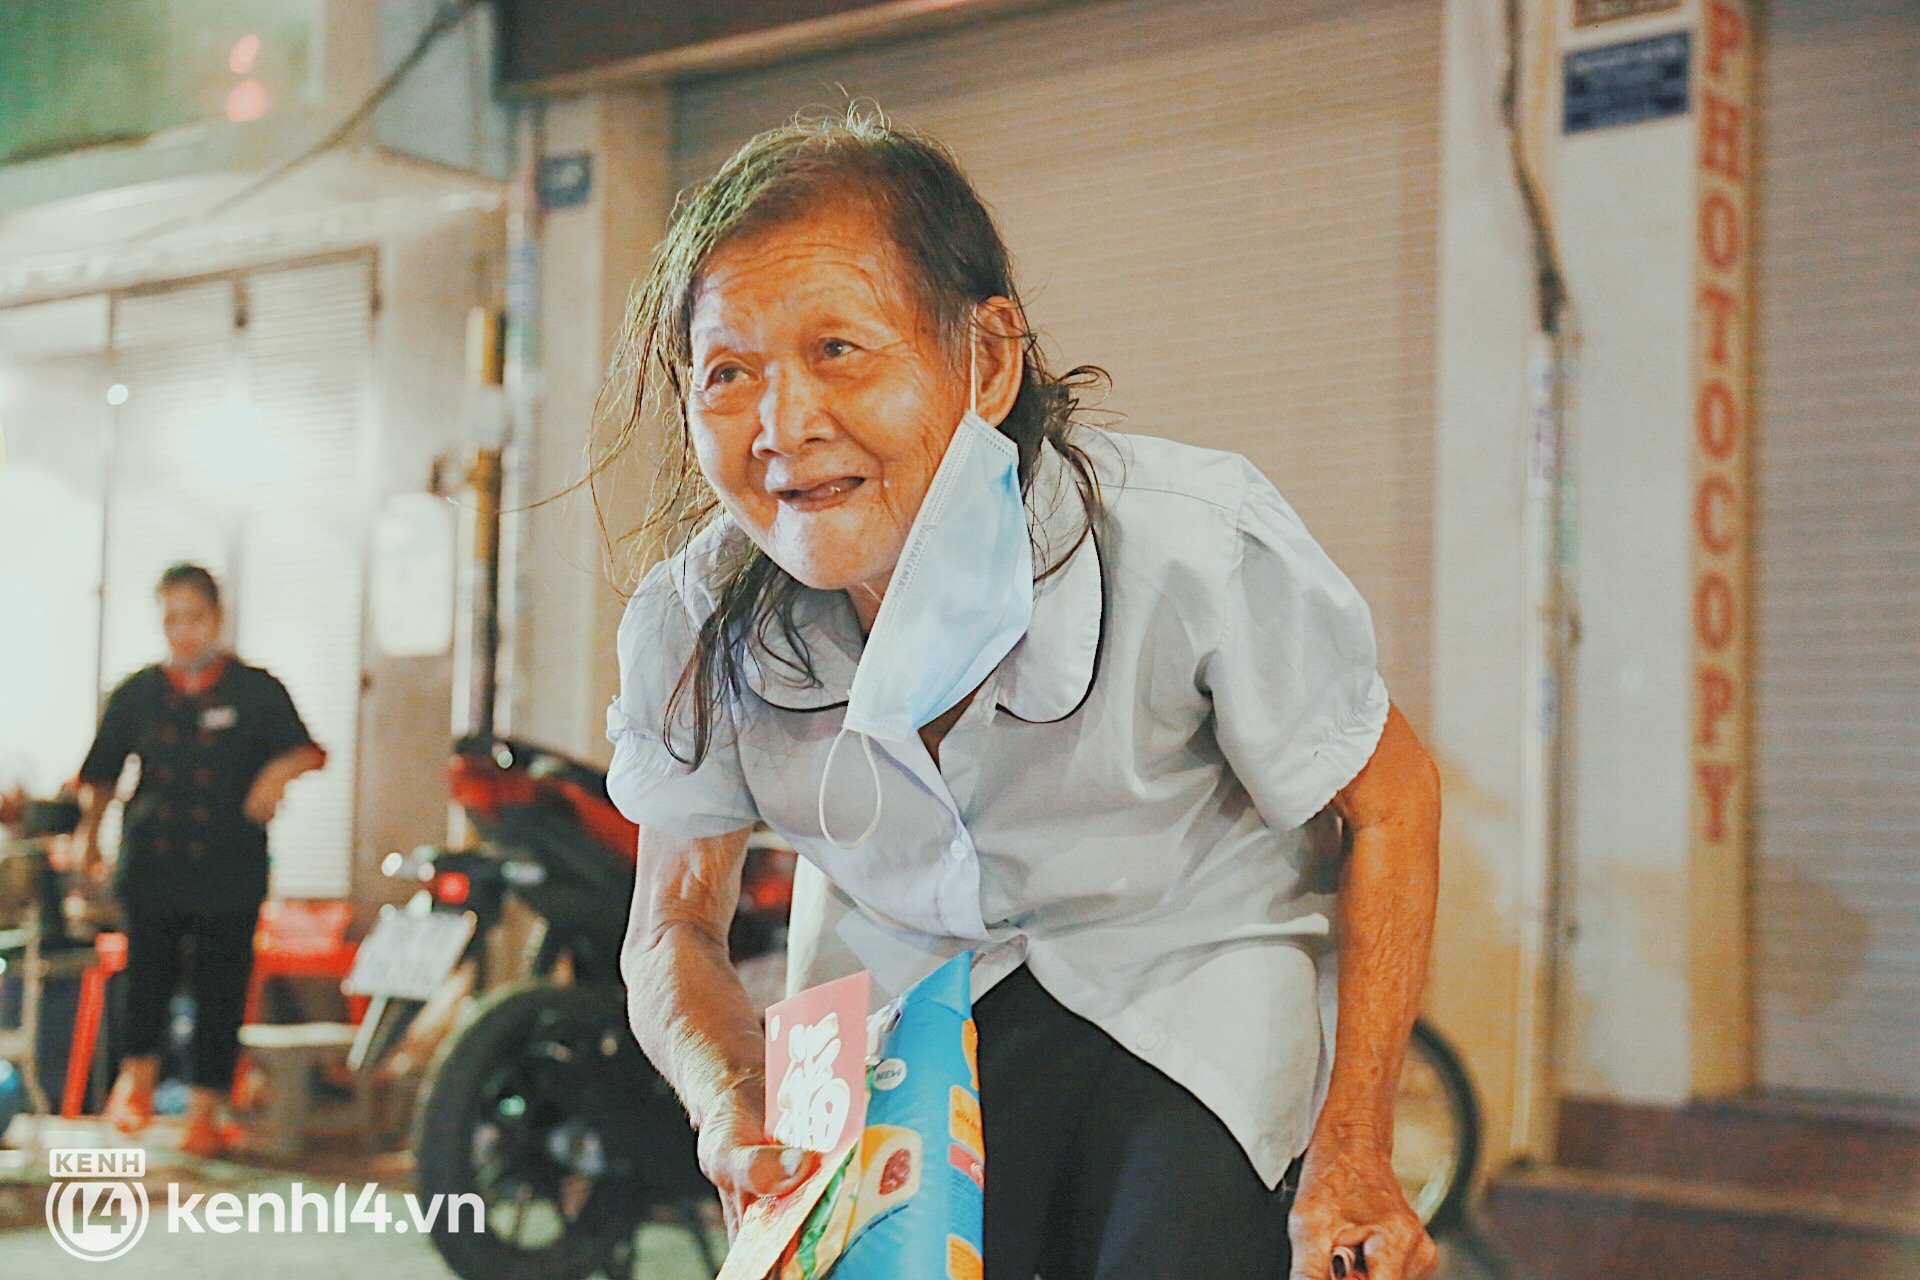 Người vô gia cư co ro trong đêm Sài Gòn ngày cận Tết: Bà làm gì có nhà để về, ở đây người ta cho đồ ăn, quý lắm... - Ảnh 3.